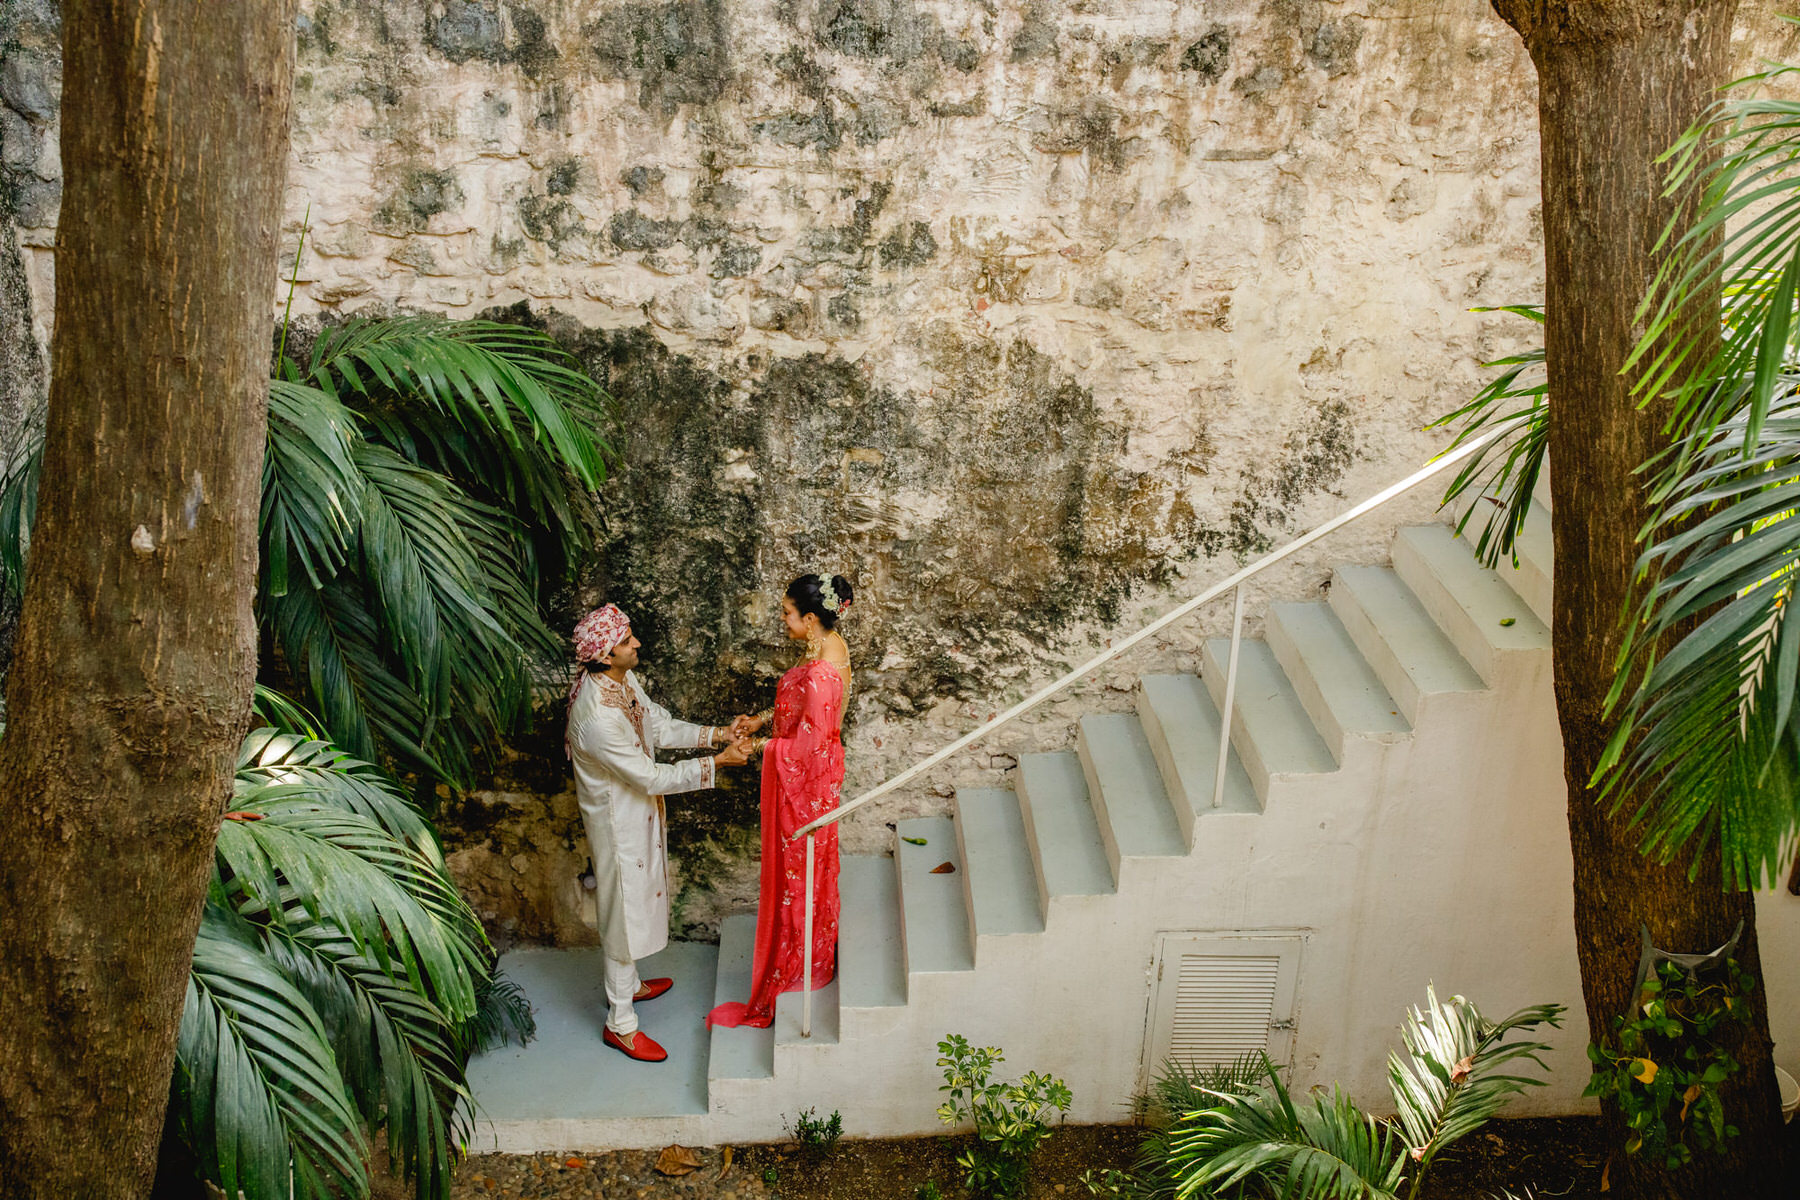 Hindu-Muslim fusion love story in the enchanting backdrop of Cartagena de Indias.